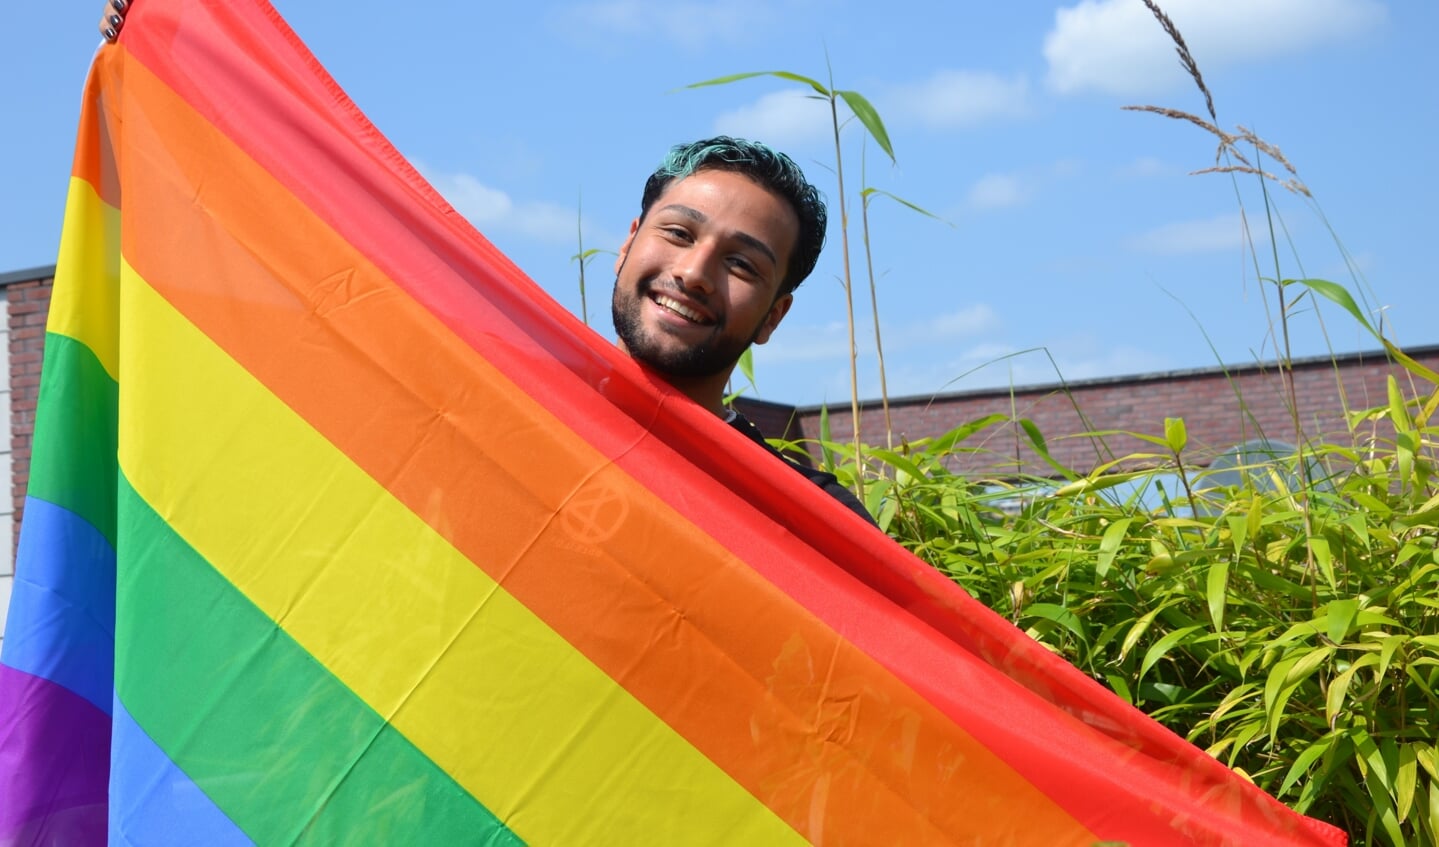  Rashad houdt van de regenboogvlag.